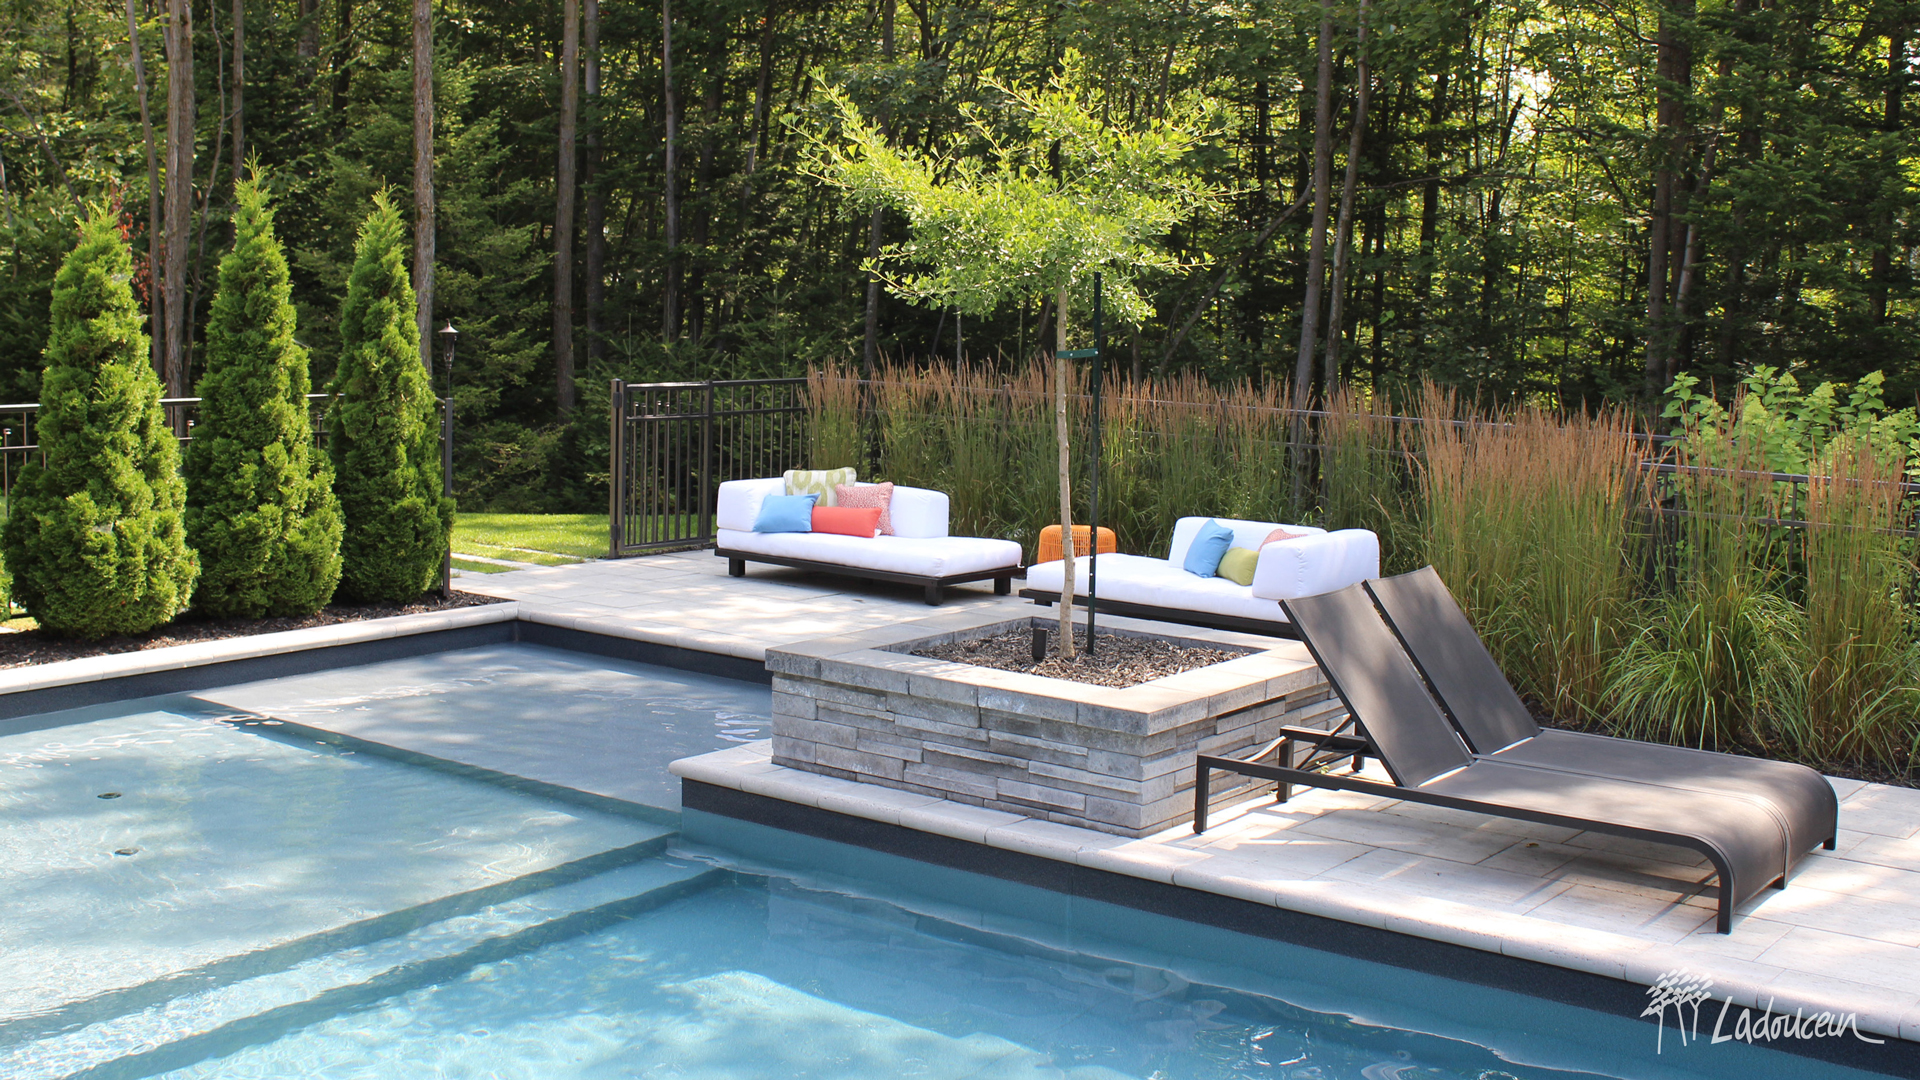 Espace détente en bordure de la piscine avec mobilier lounge et végétaux ladouceur